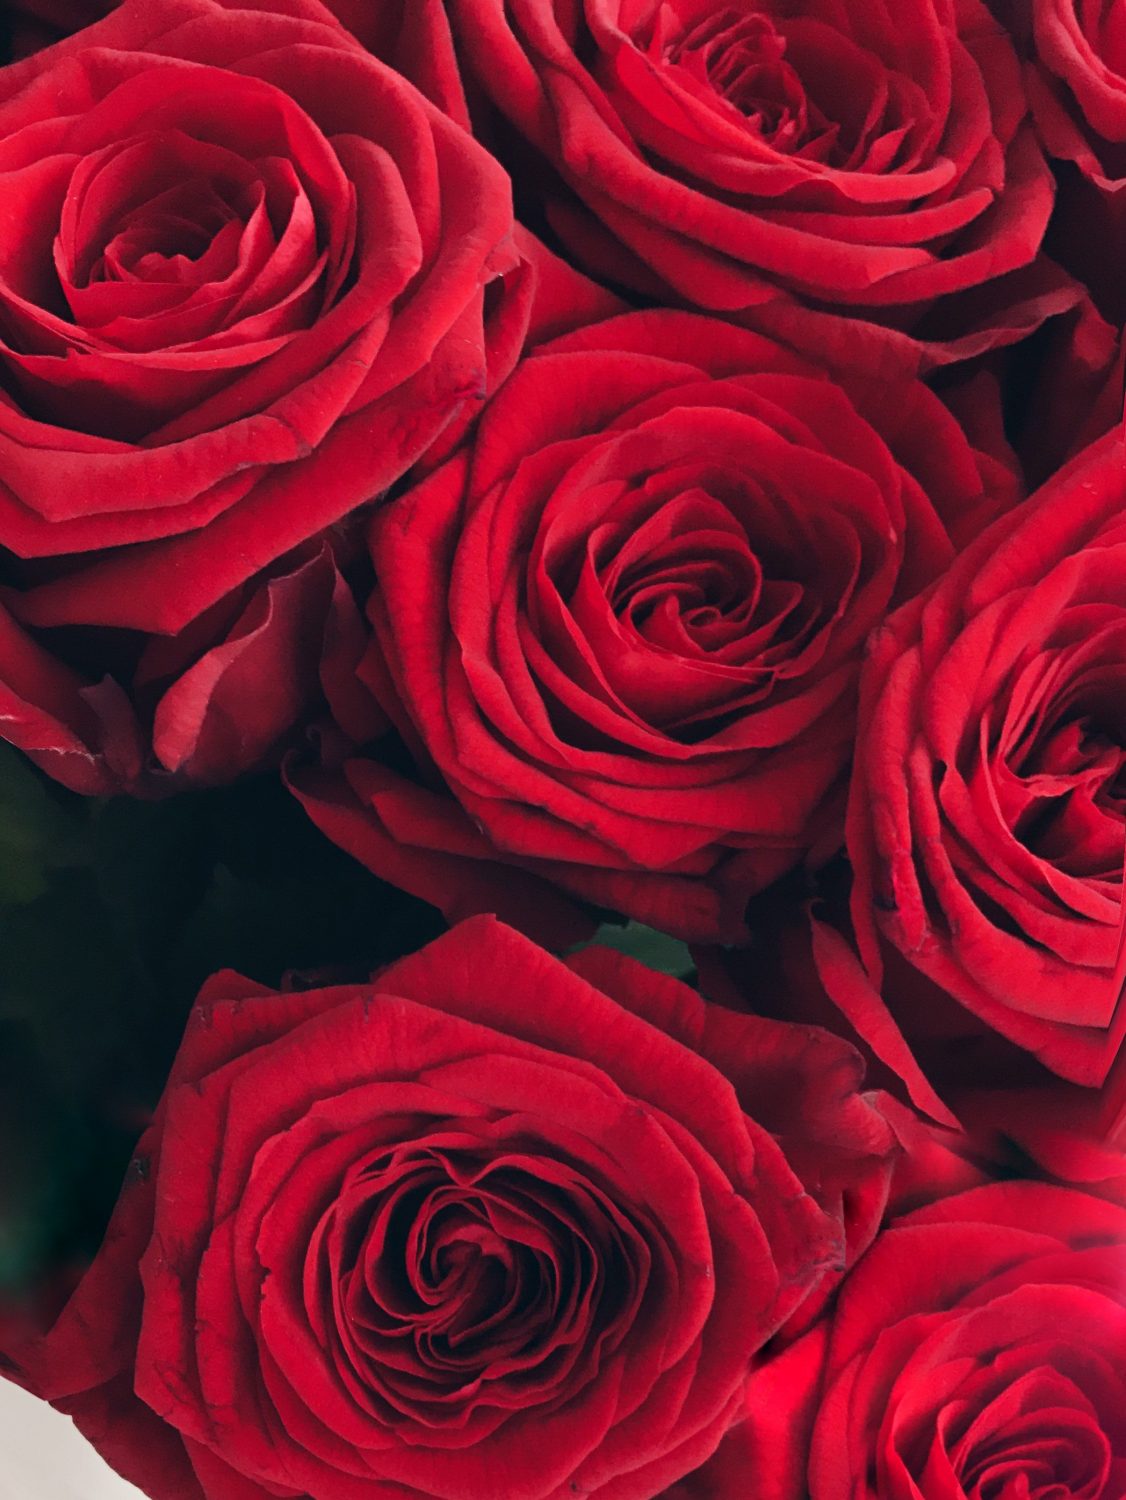 5 Dia das mães - Bouquet de rosas vermelhas - Kezia Happuck